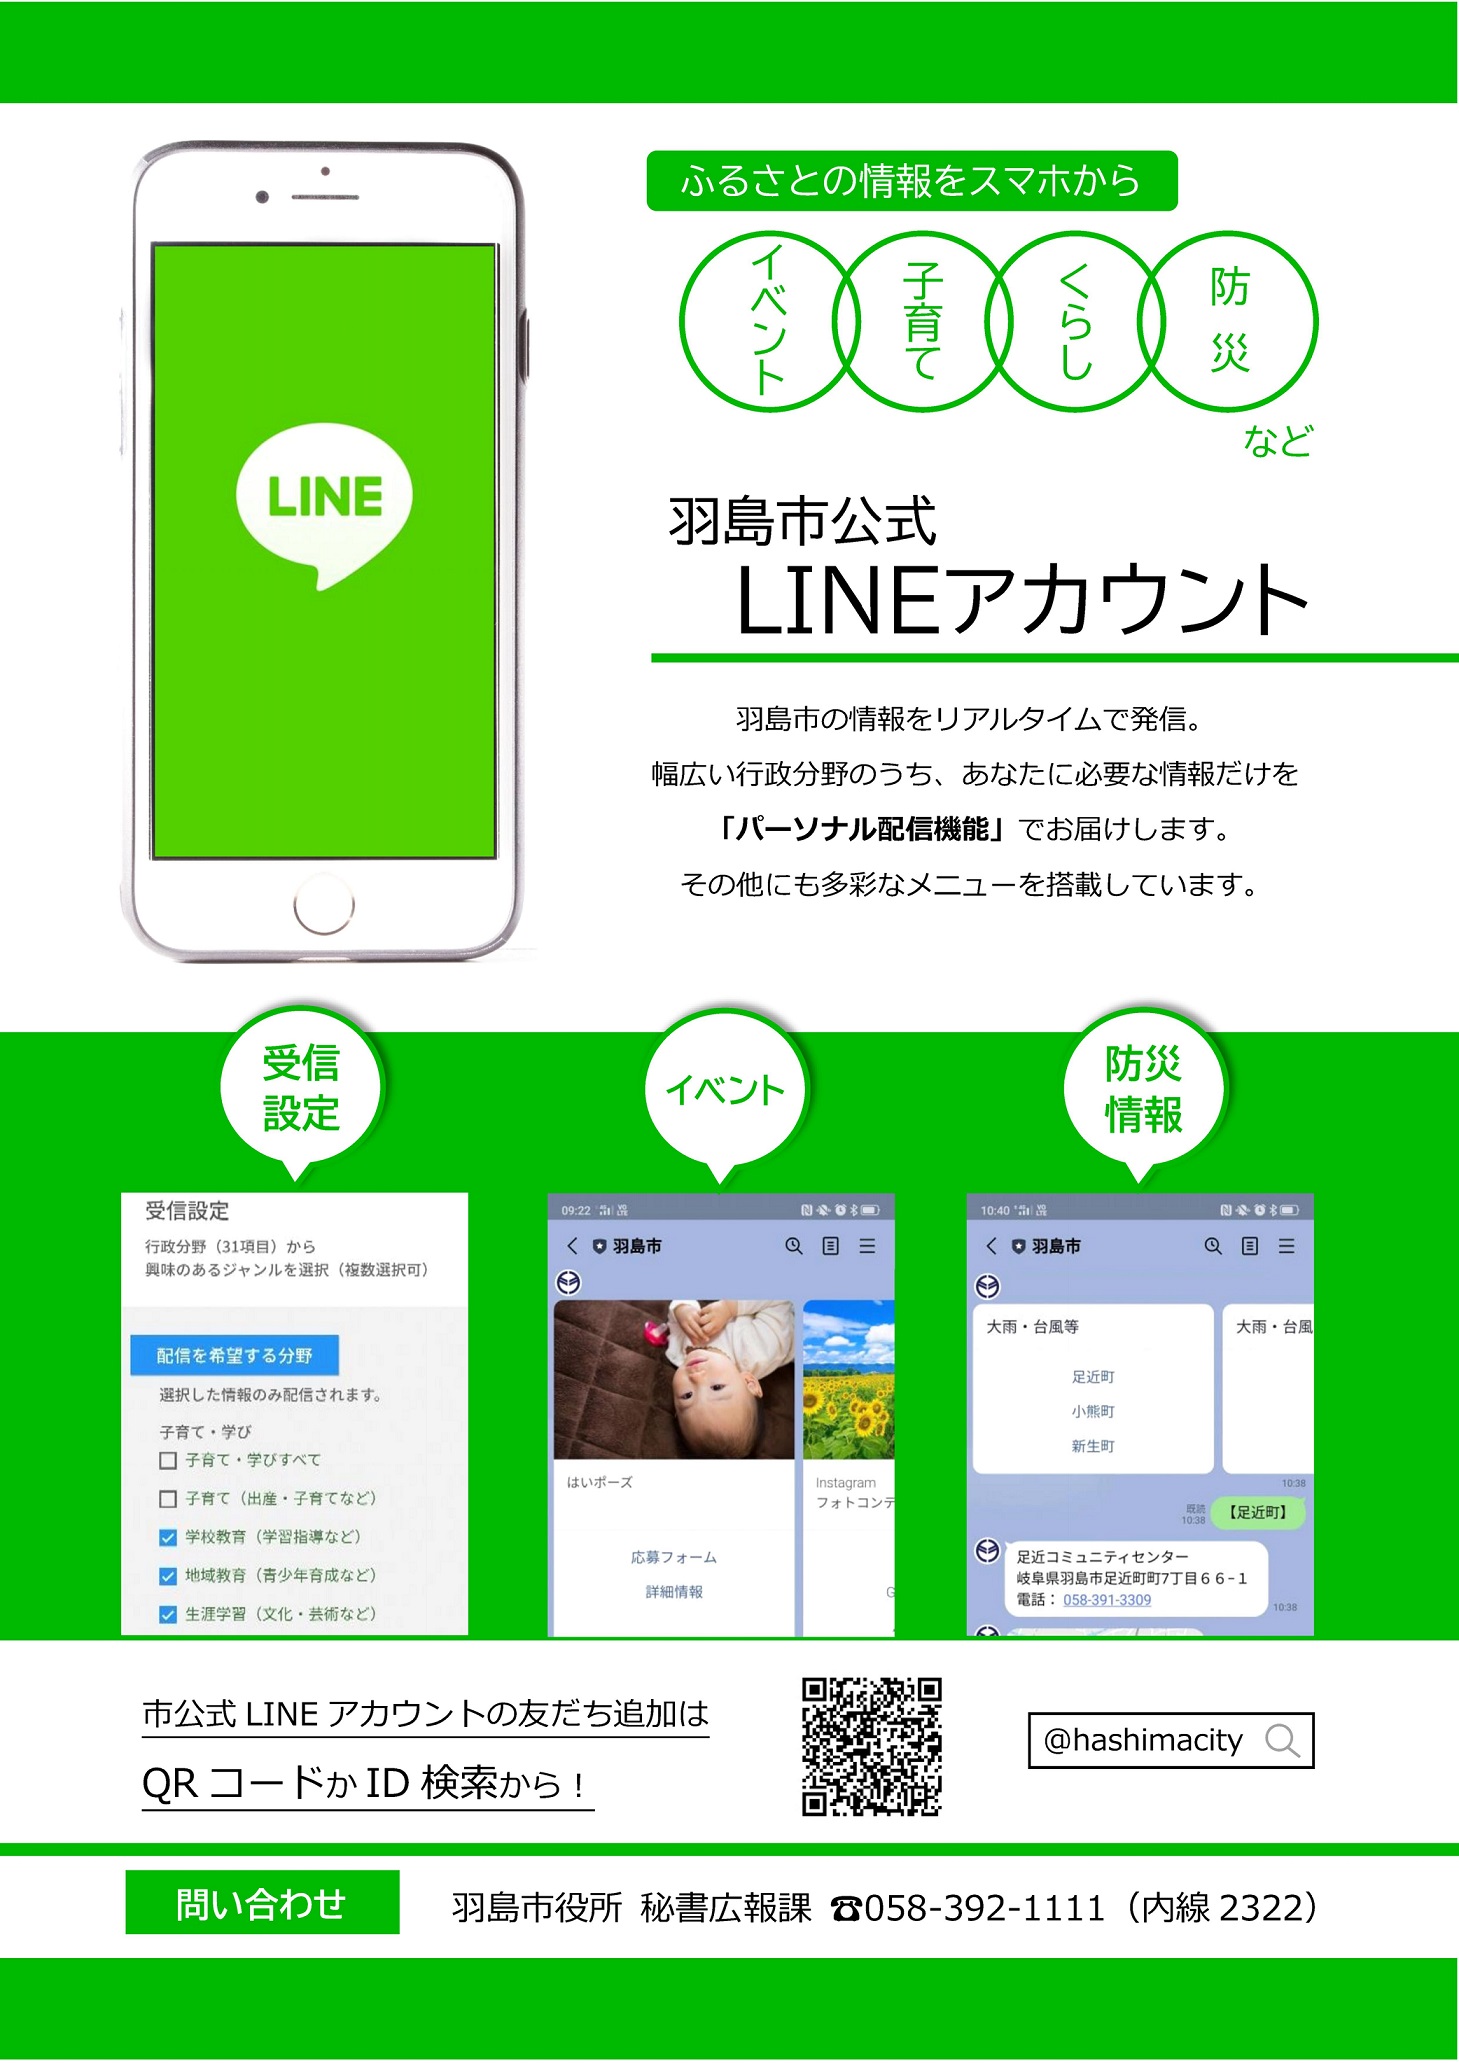 新しい広報のスタイル　羽島市公式LINEを運用開始